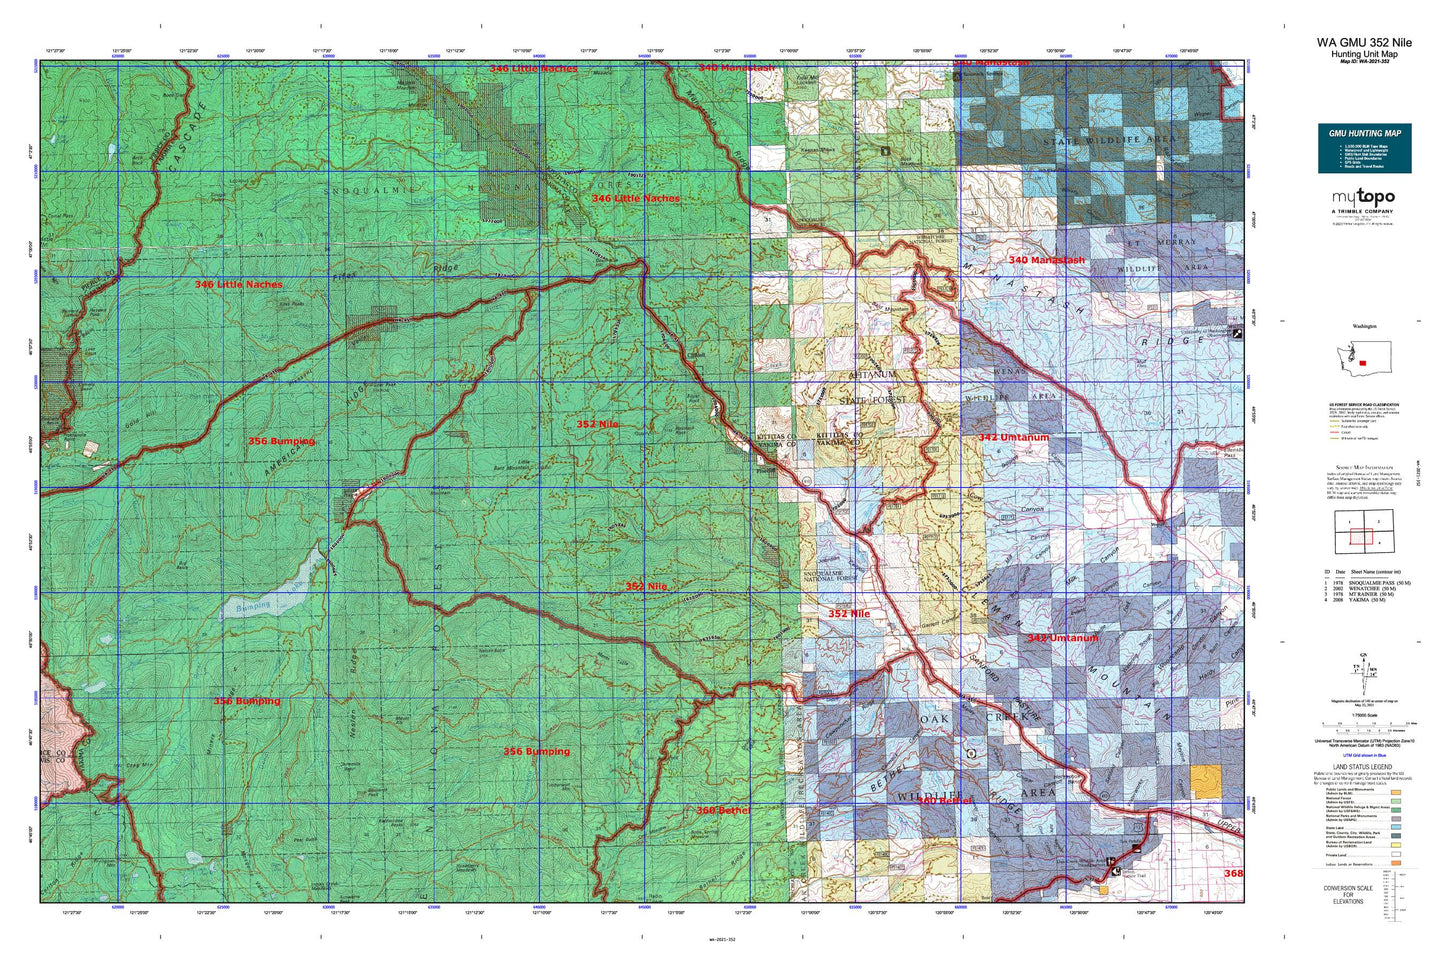 Washington GMU 352 Nile Map Image